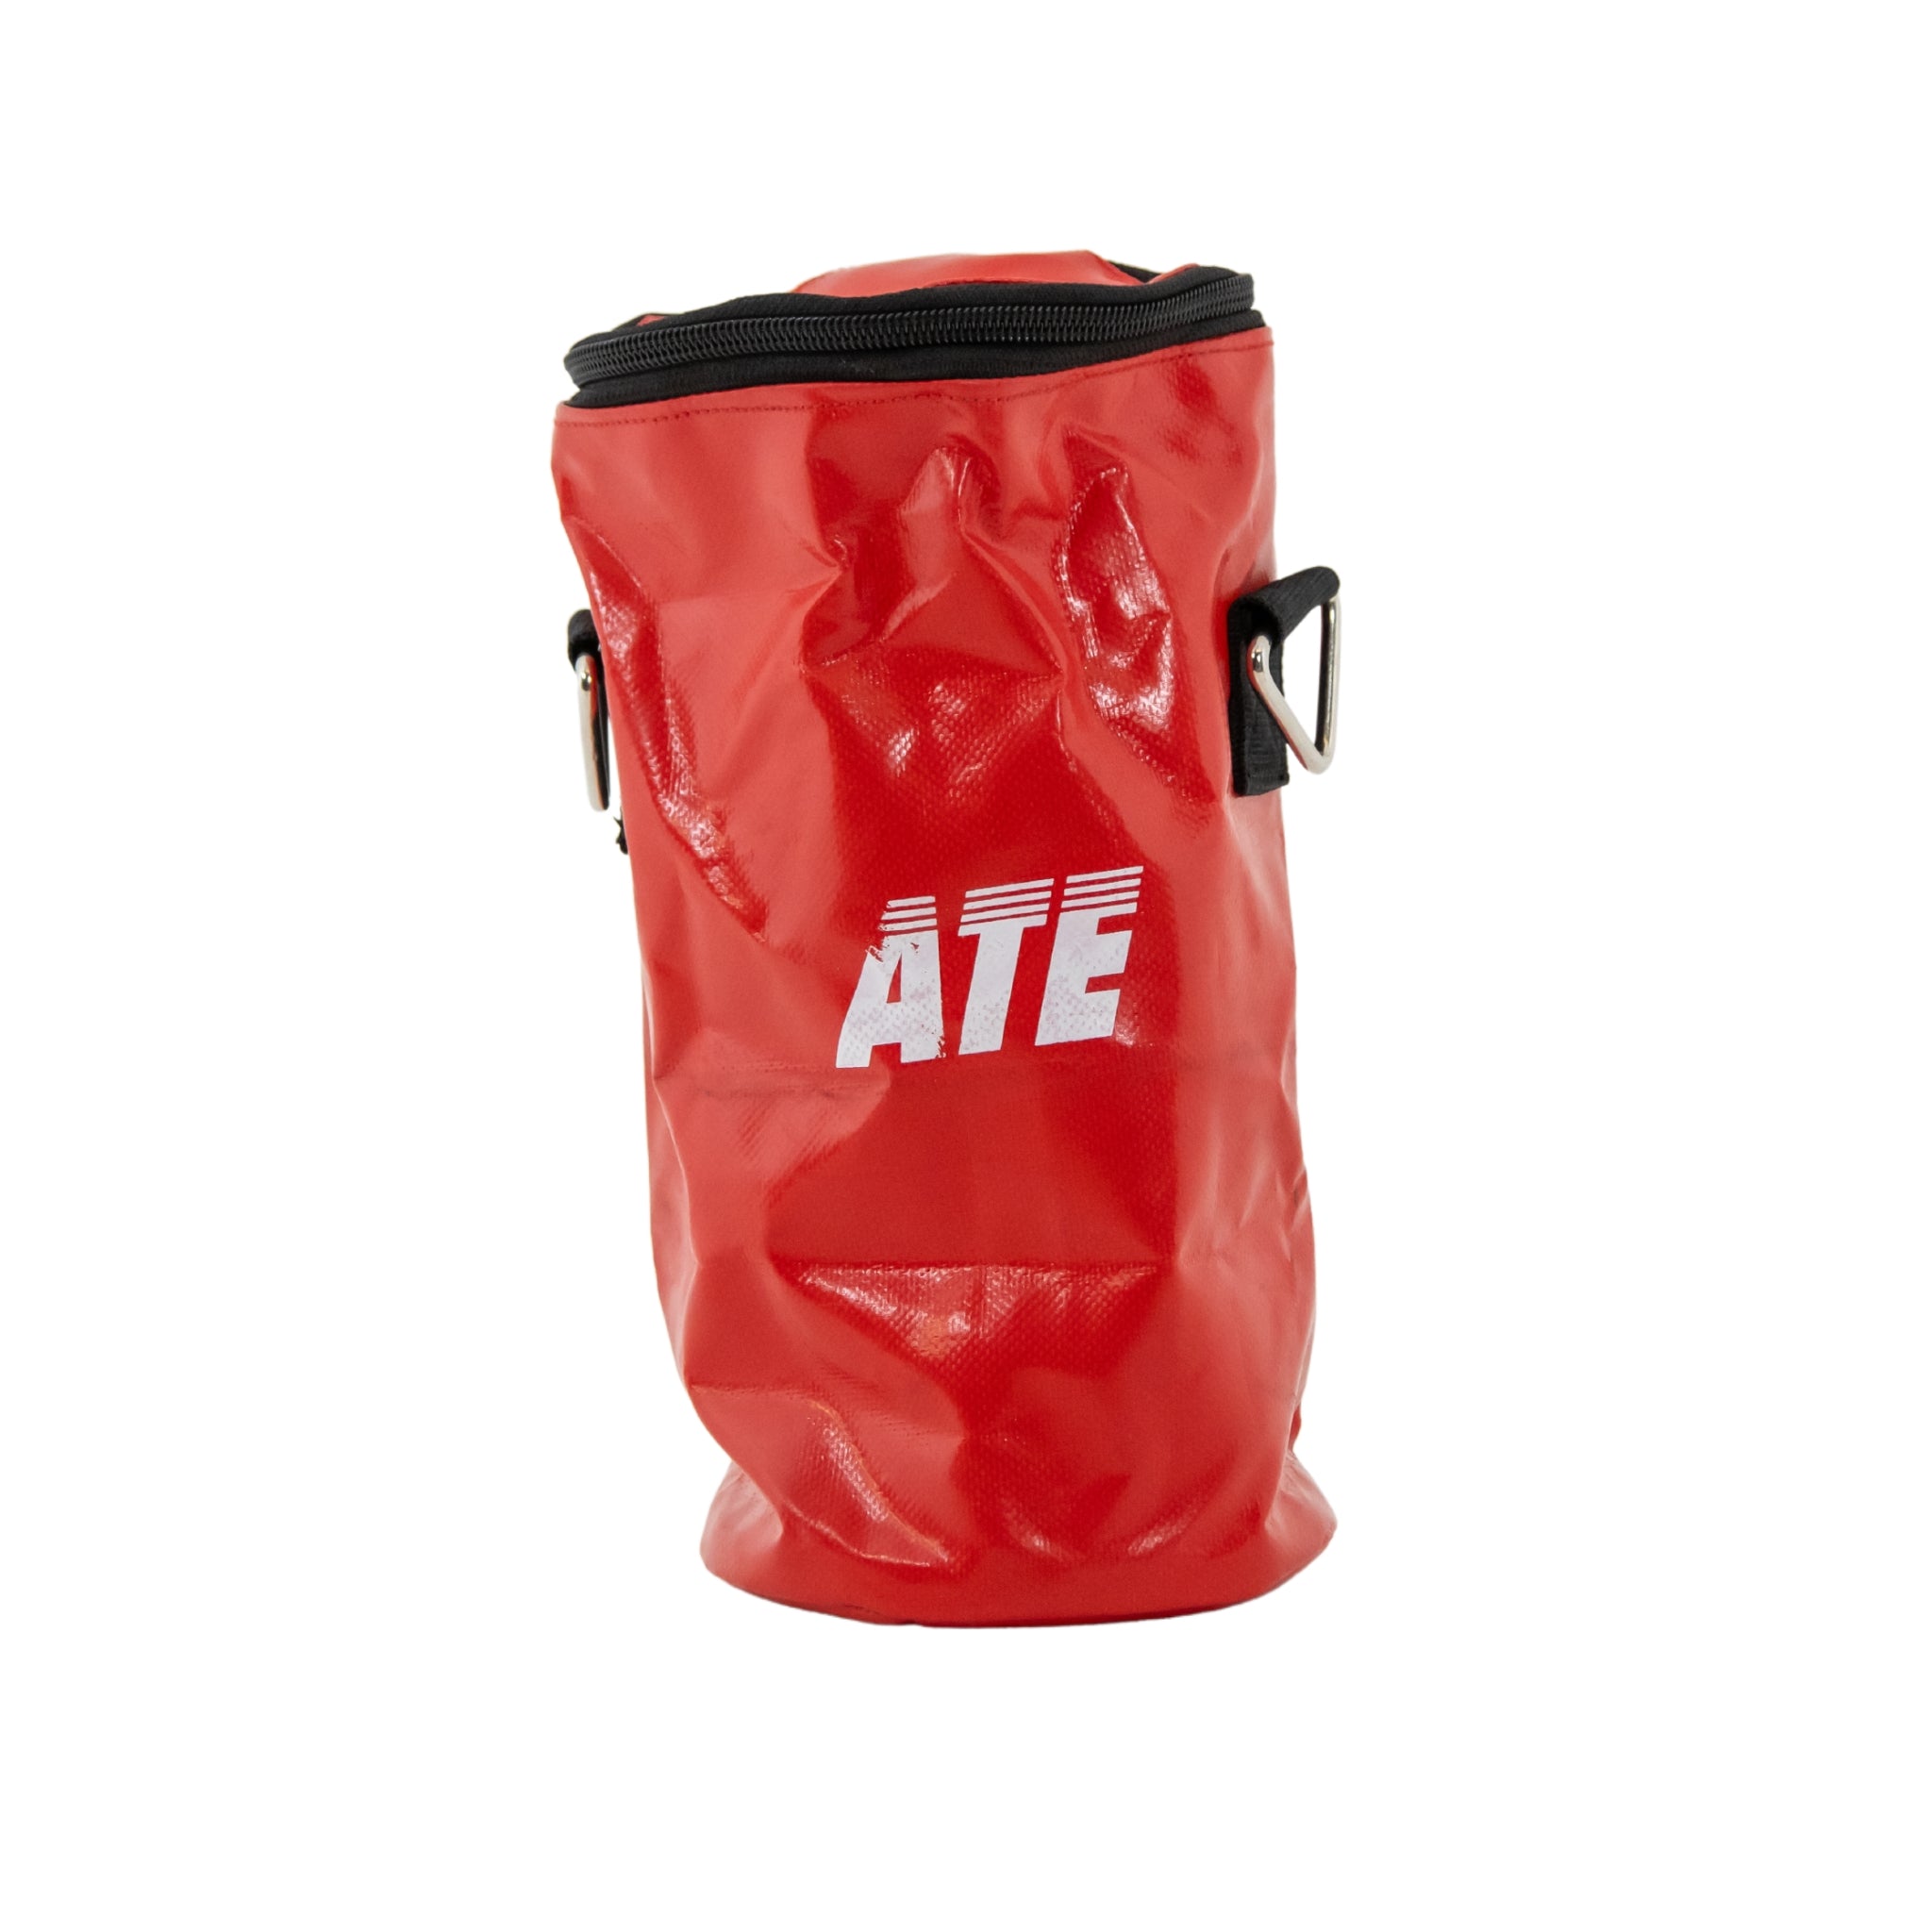 ATE Shot Kit Bag | Hardwearing red fabric with ATE logo